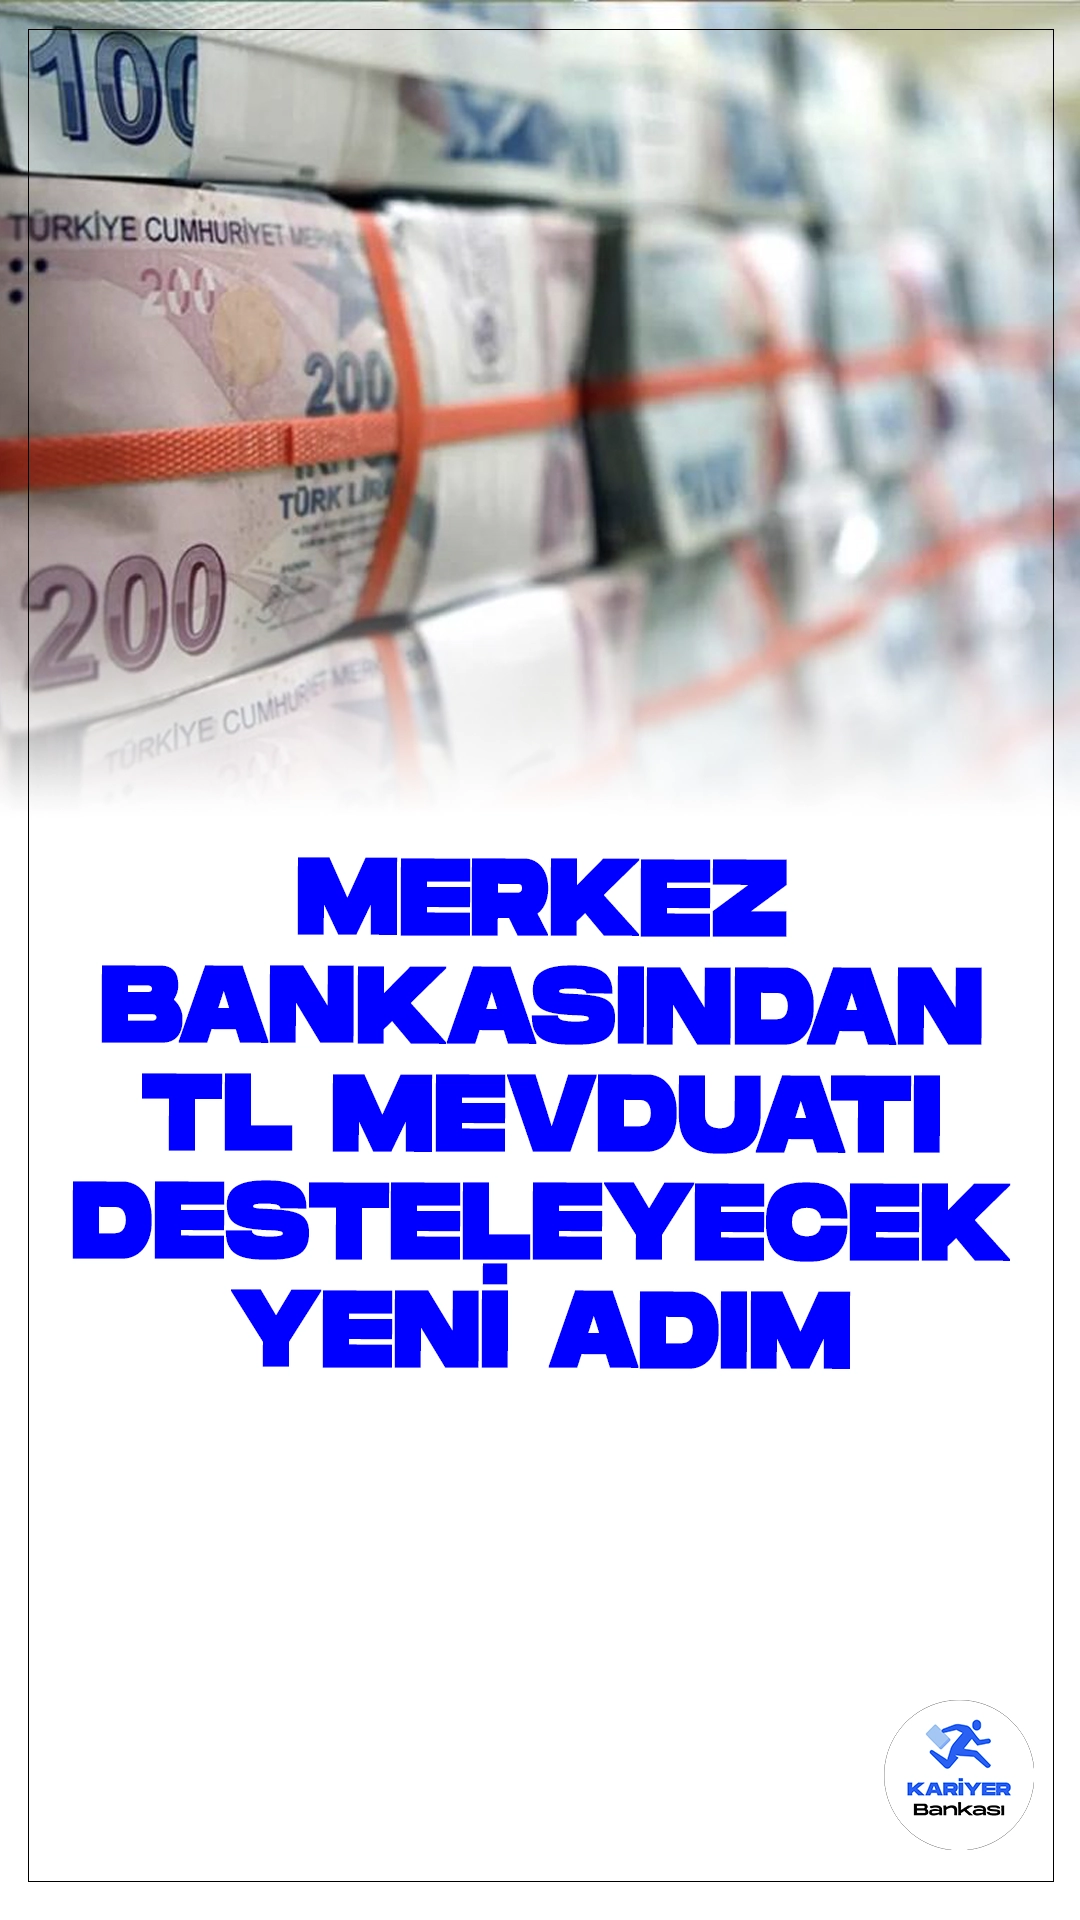 TCMB'den Türk Lirası Mevduatına Destek.Türkiye Cumhuriyet Merkez Bankası (TCMB), Türk lirası mevduatlarını desteklemek amacıyla yeni adımlar attı.